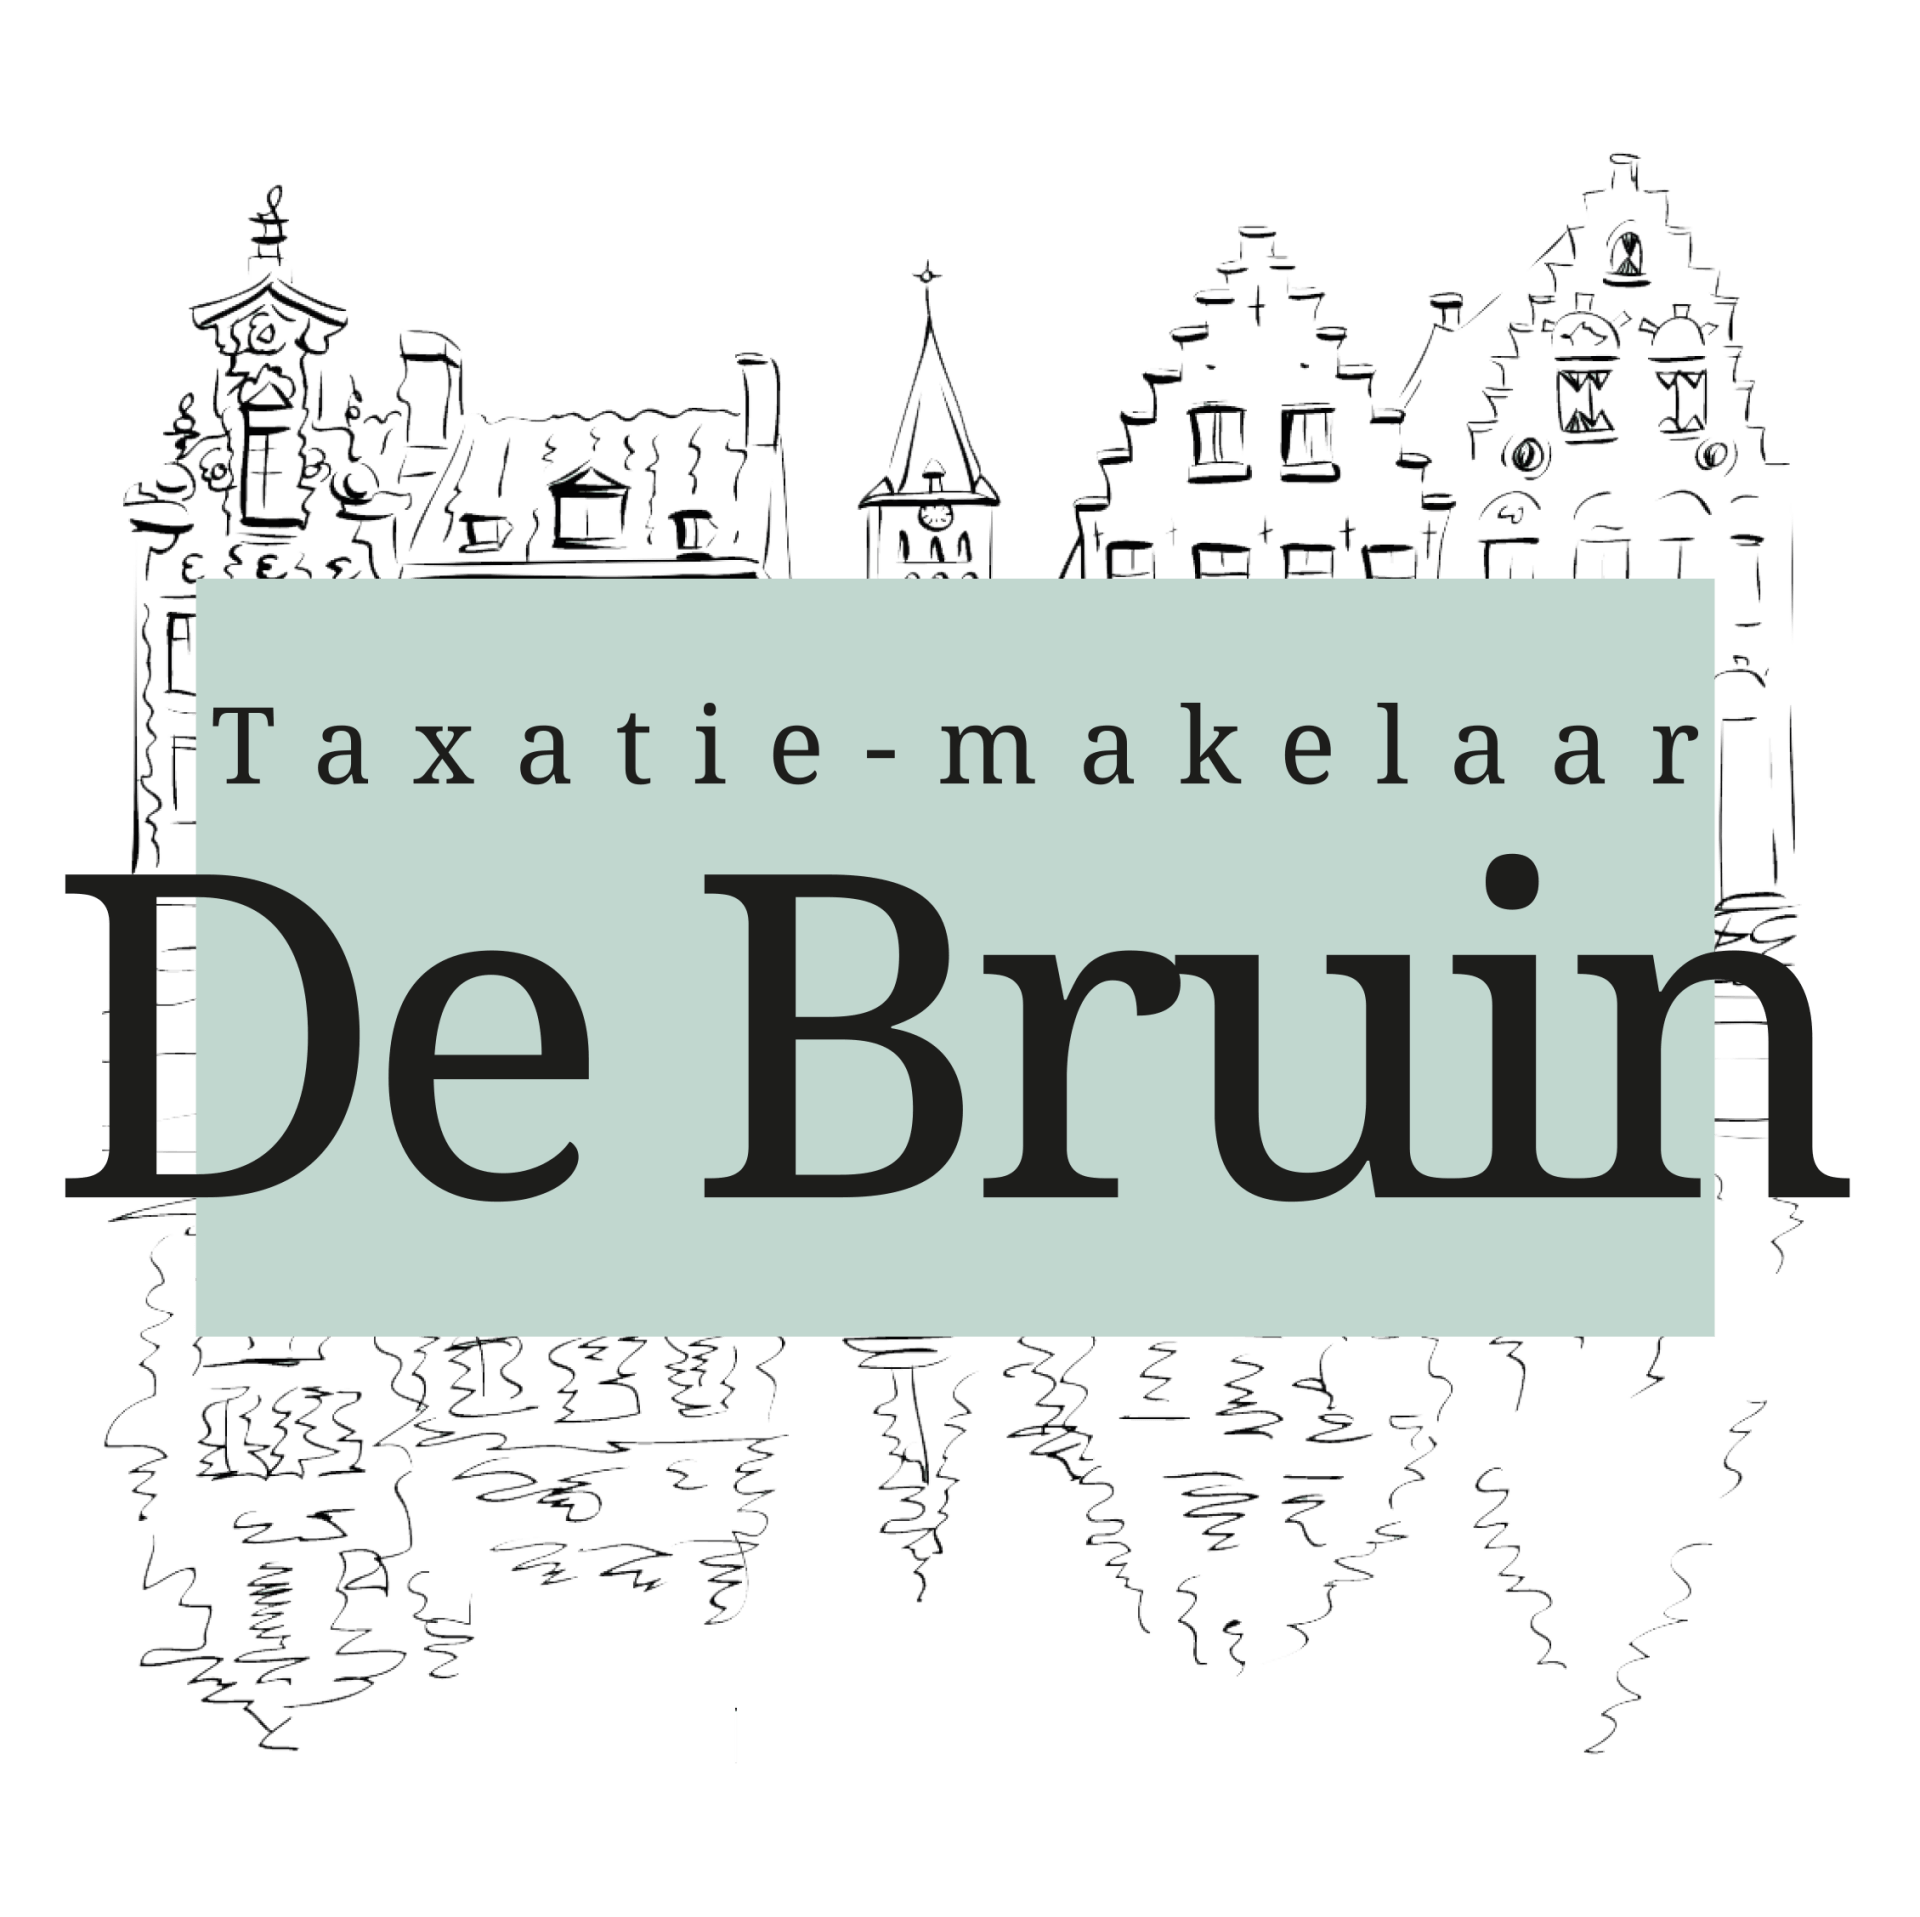 Taxatie-makelaar de Bruin